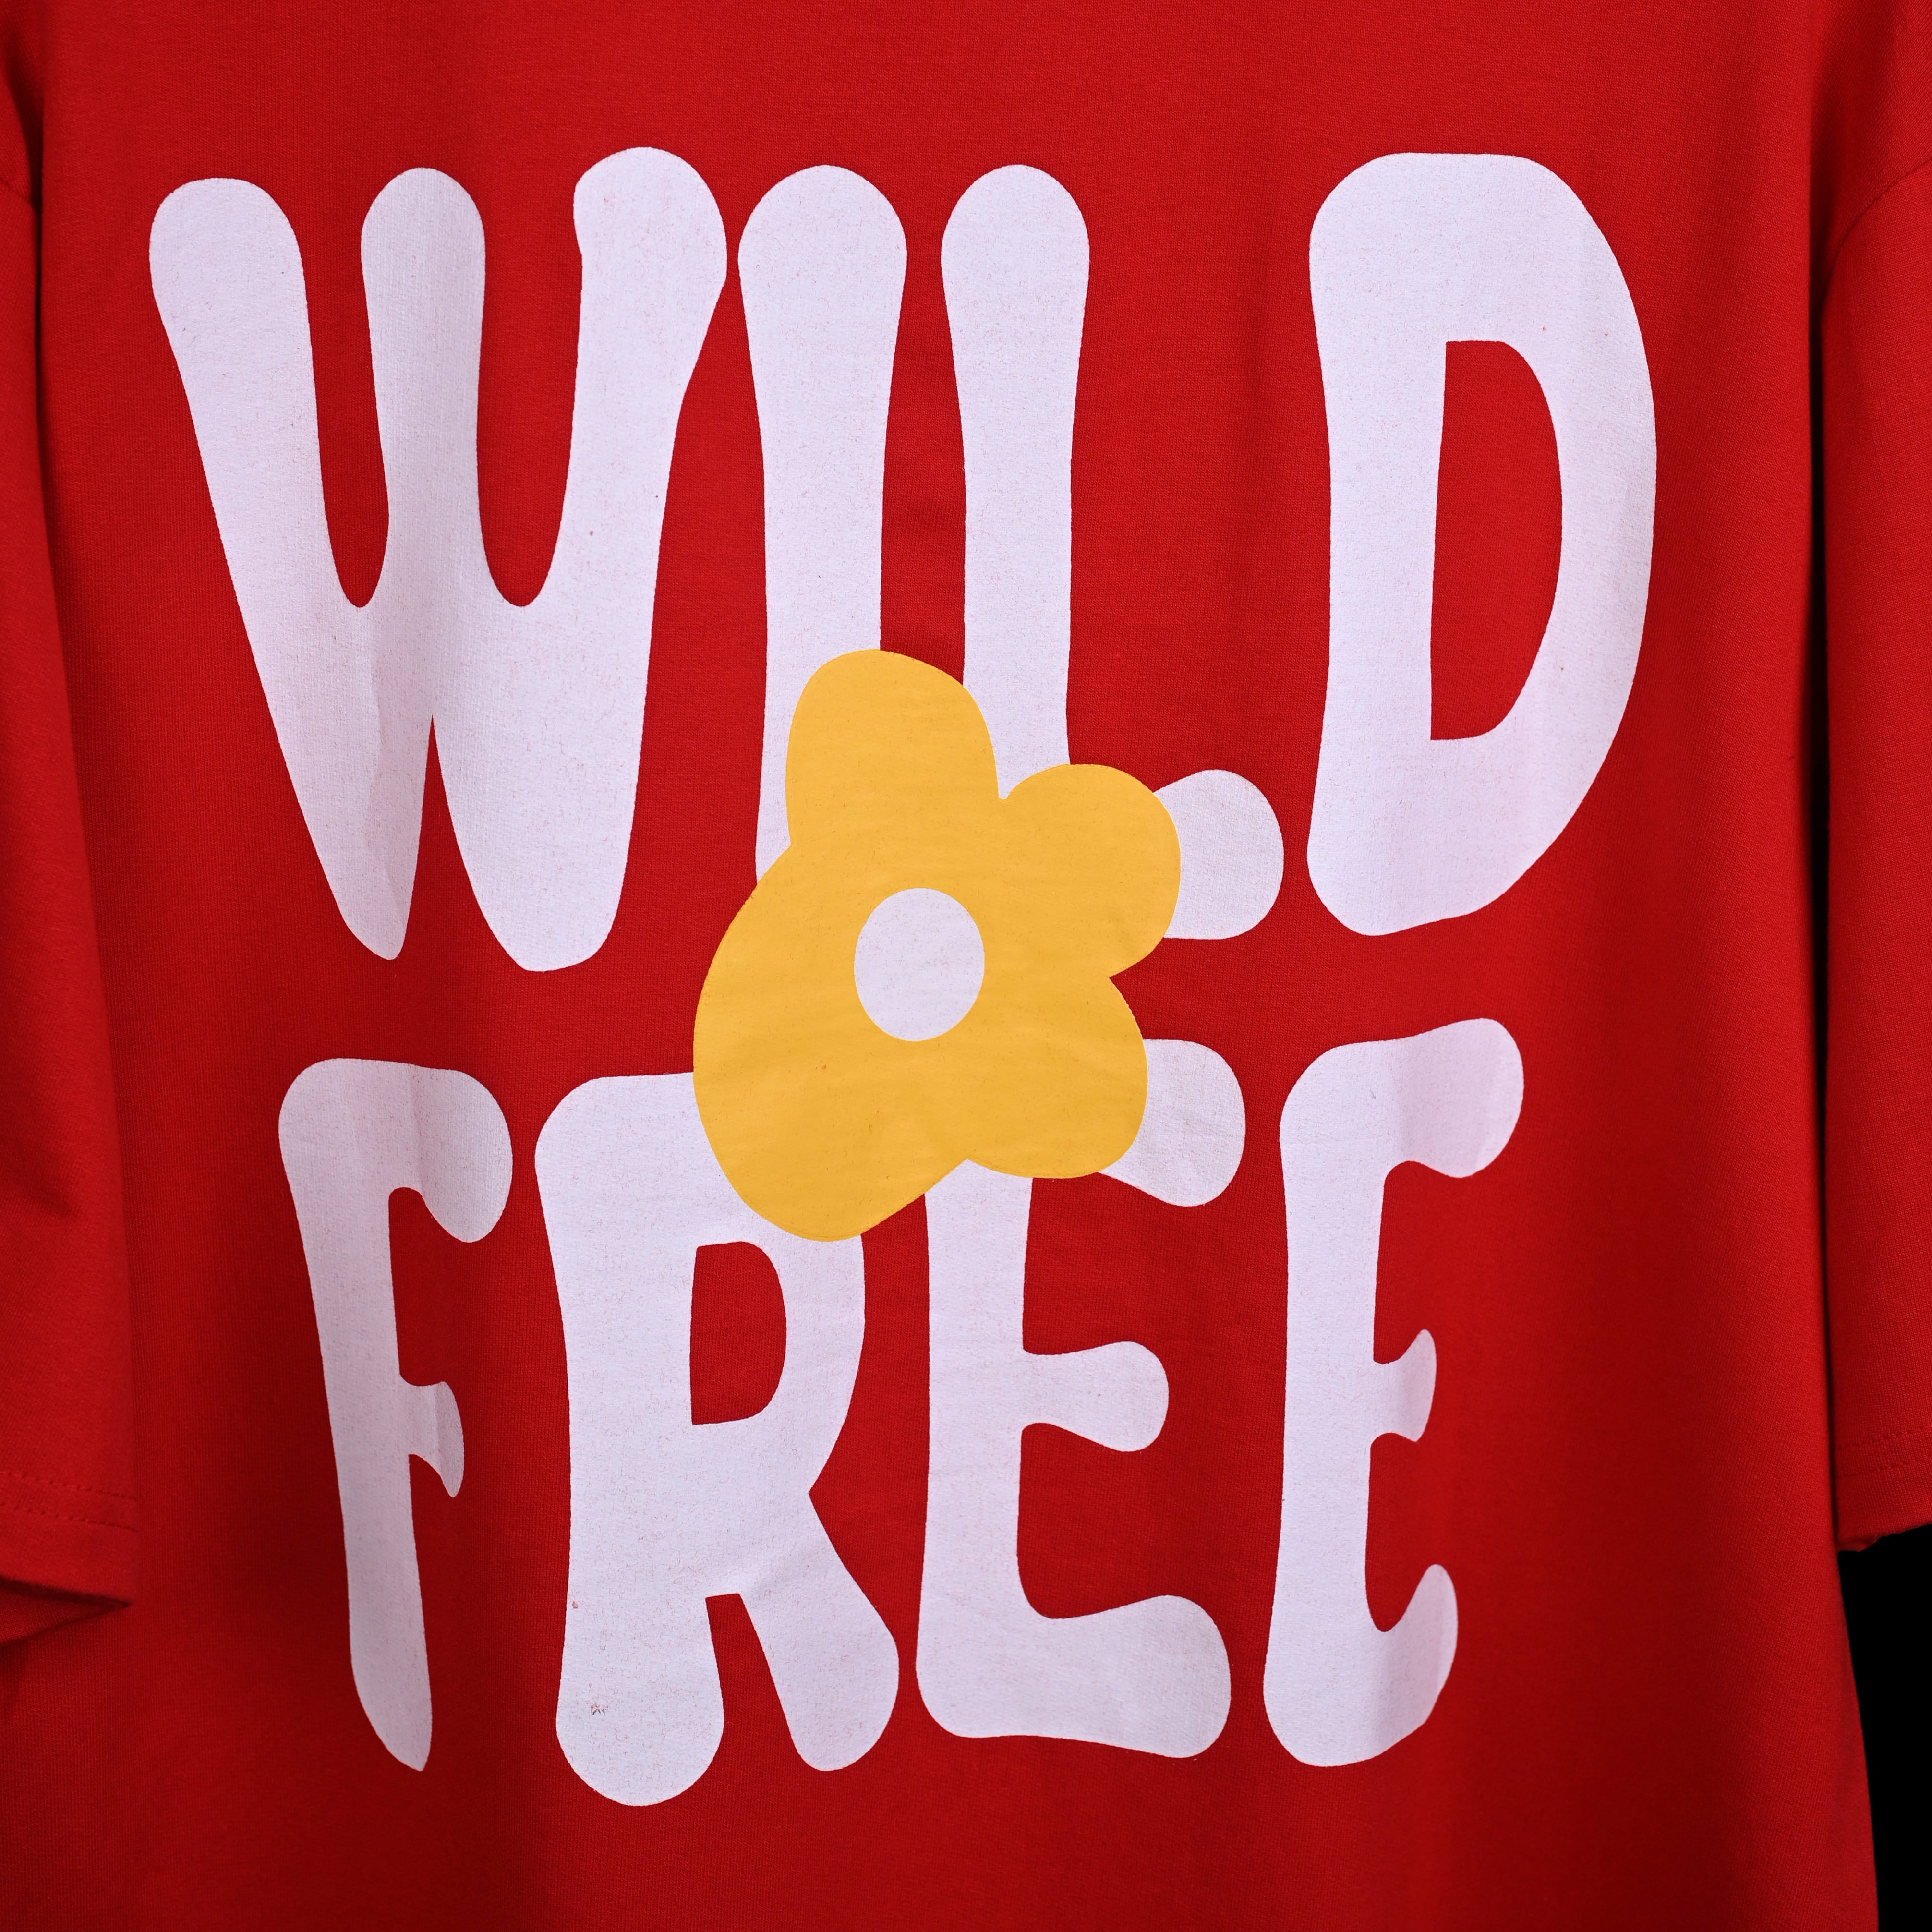 Wild Free